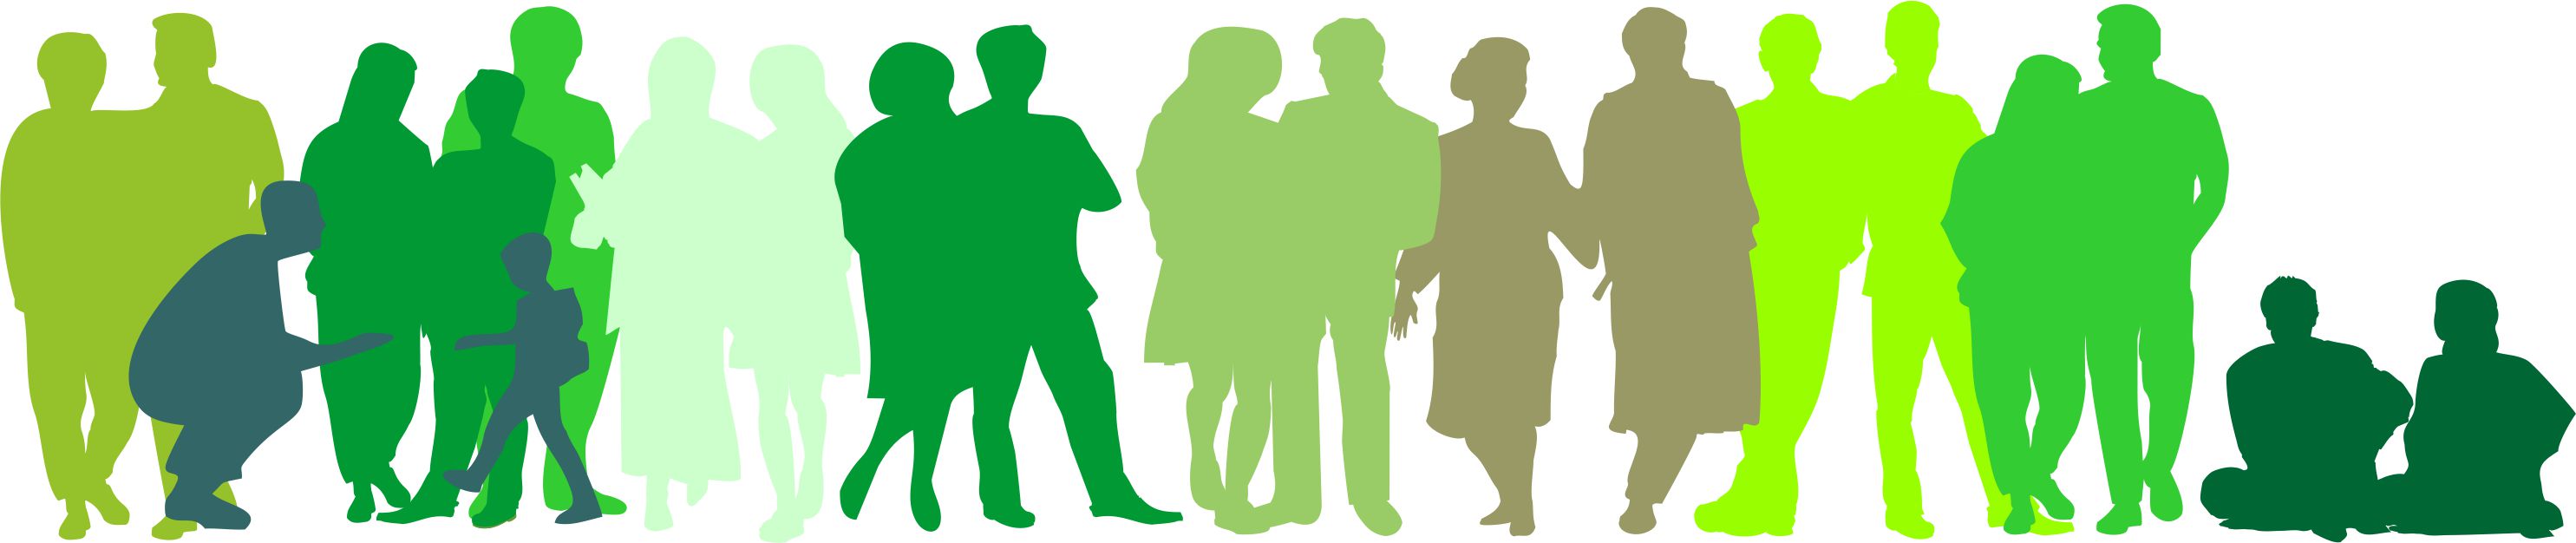 Umrisse von verschiedenen Menschen (Geschlecht, Alter, Körper) in Grün mit verschiedenen Tönen. 